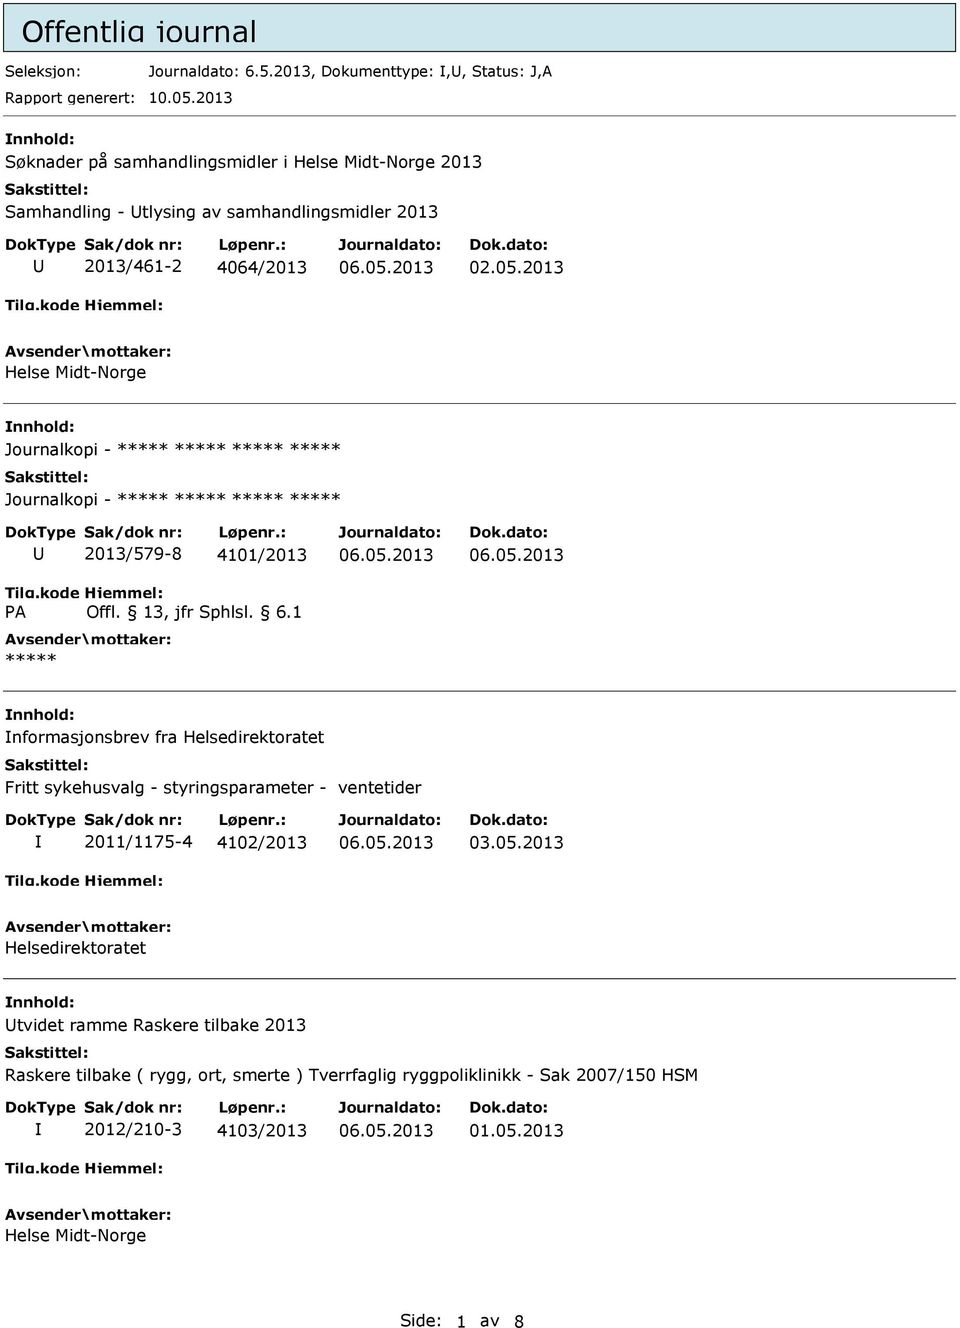 4101/2013 nformasjonsbrev fra Helsedirektoratet Fritt sykehusvalg - styringsparameter - ventetider 2011/1175-4 4102/2013